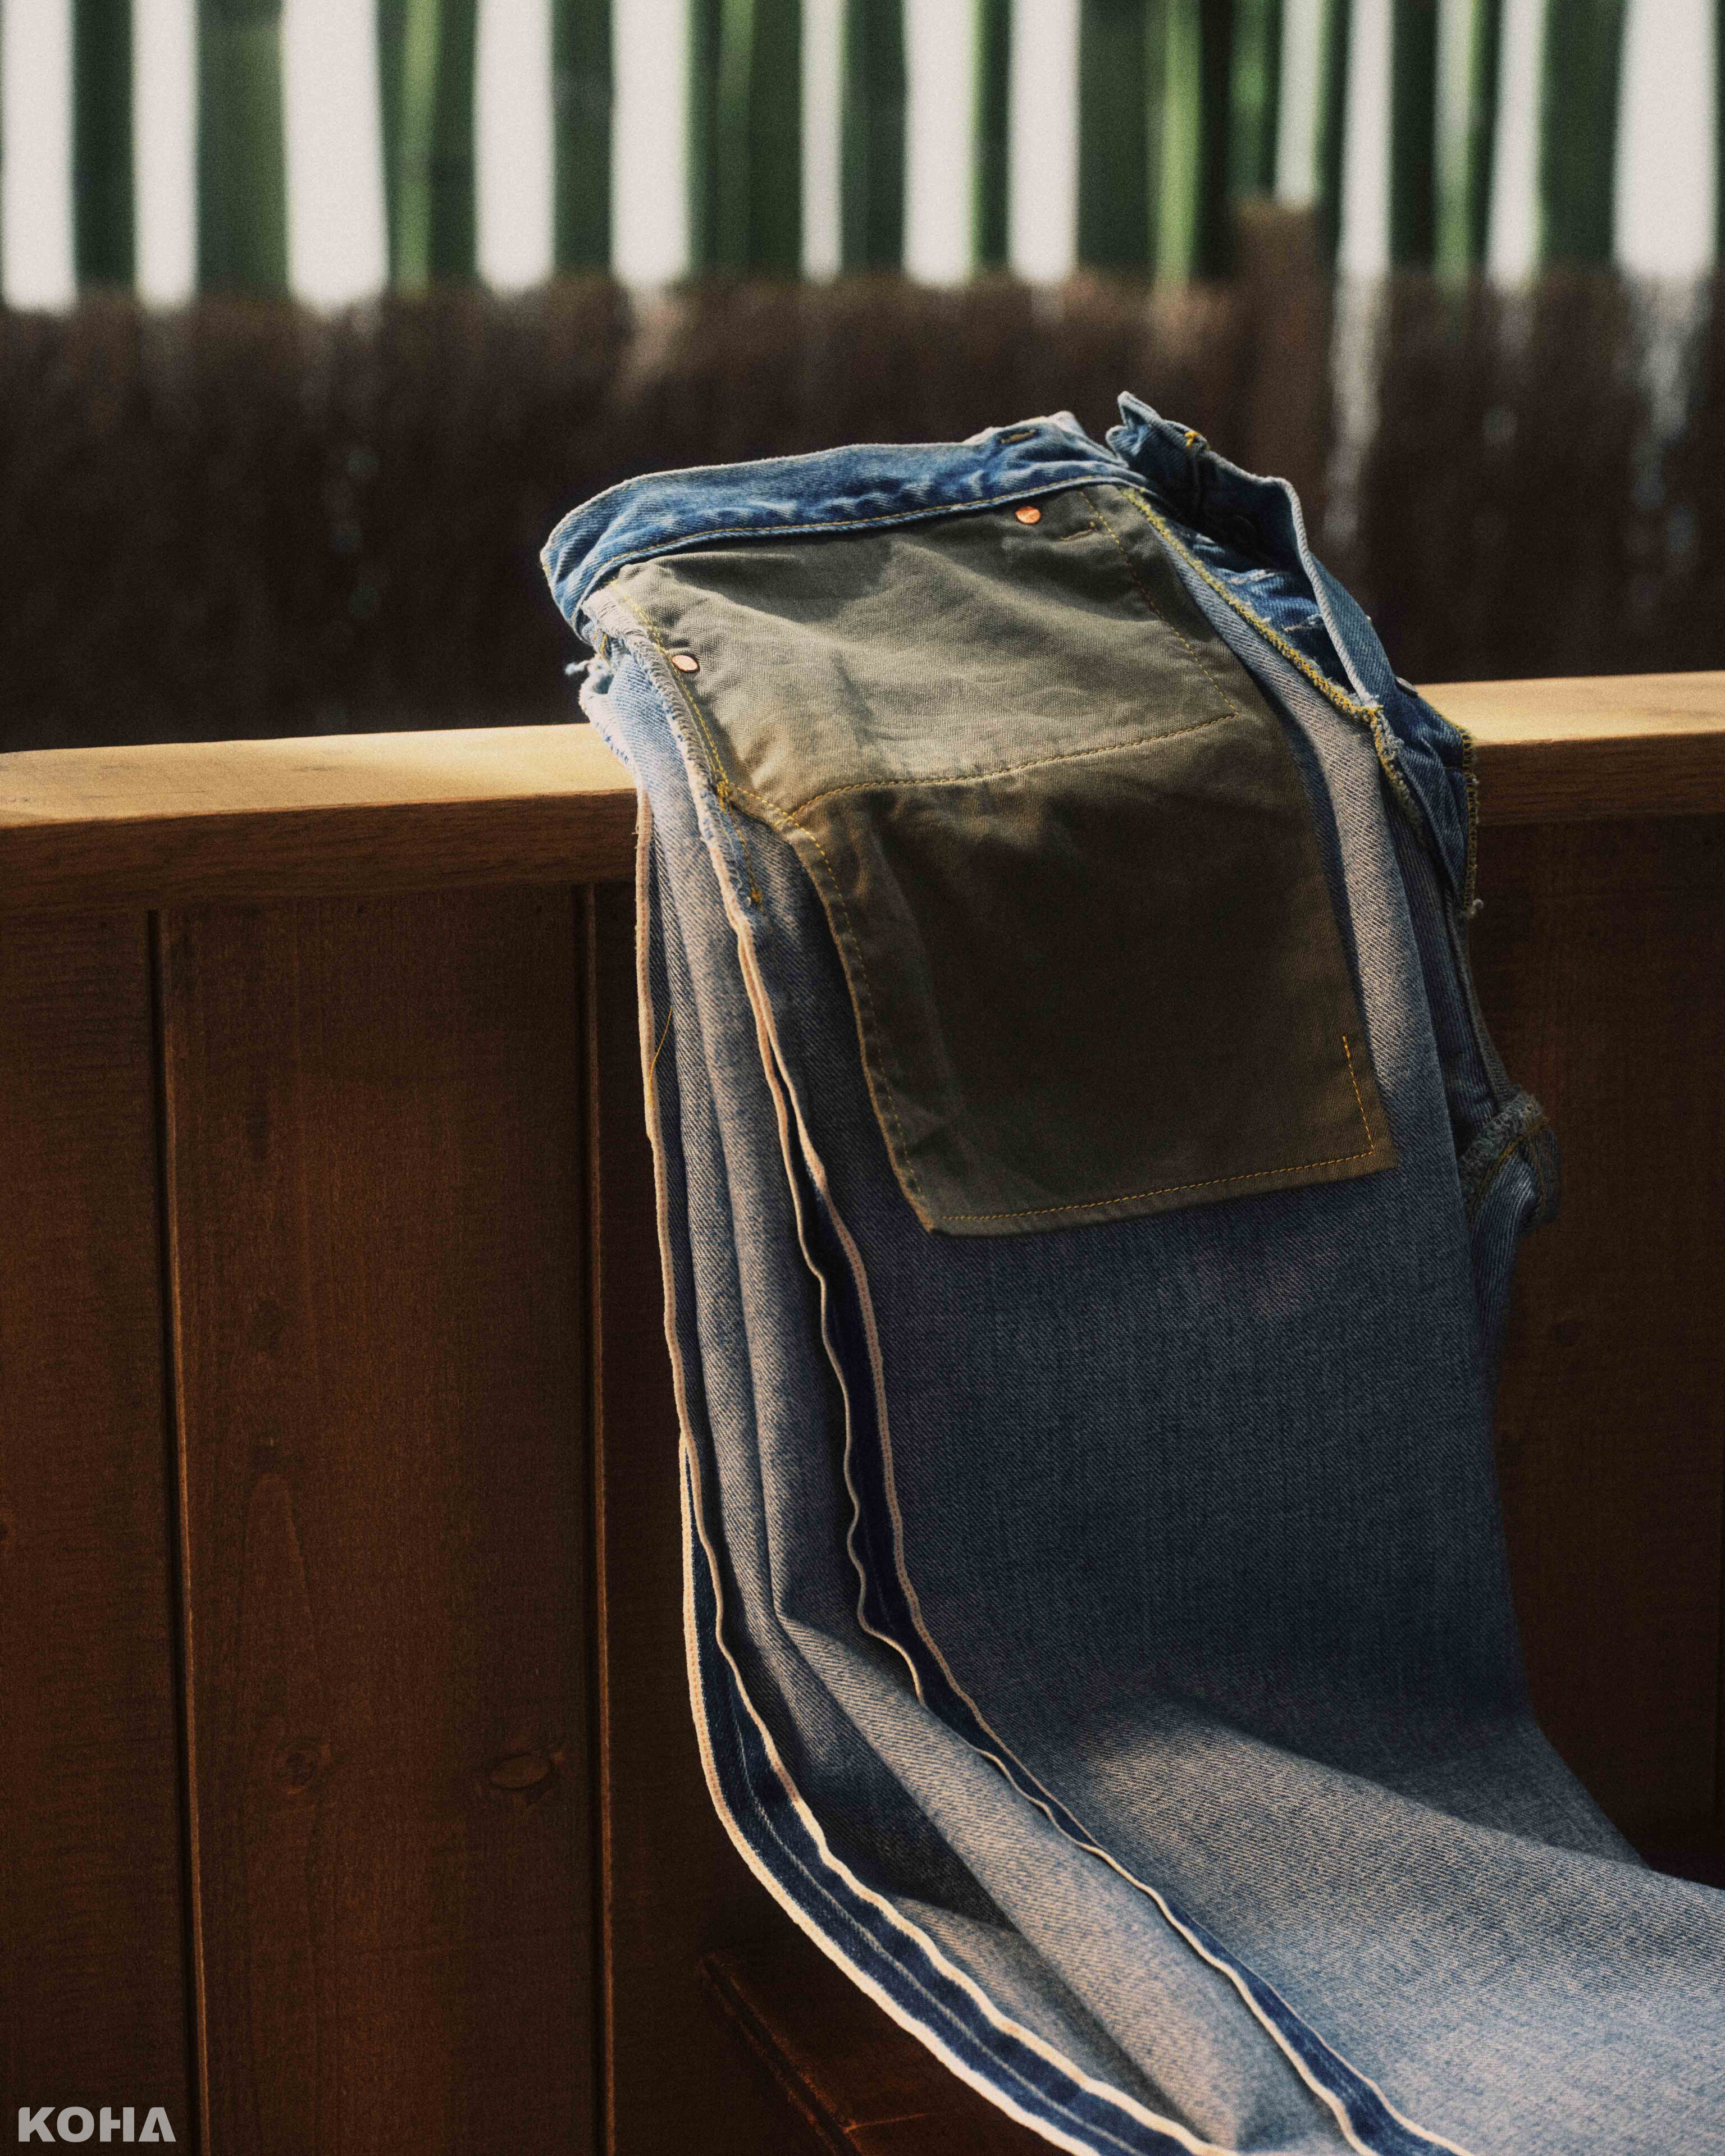 全新超 級 寬 2.0聯乘膠囊系列中，丹寧褲亦以專為BEAMS所獨家研發的橘色縫線赤耳丹寧布邊布塑造，以1944年份501®丹寧褲為設計藍本，原汁原味還原其設計精髓 scaled